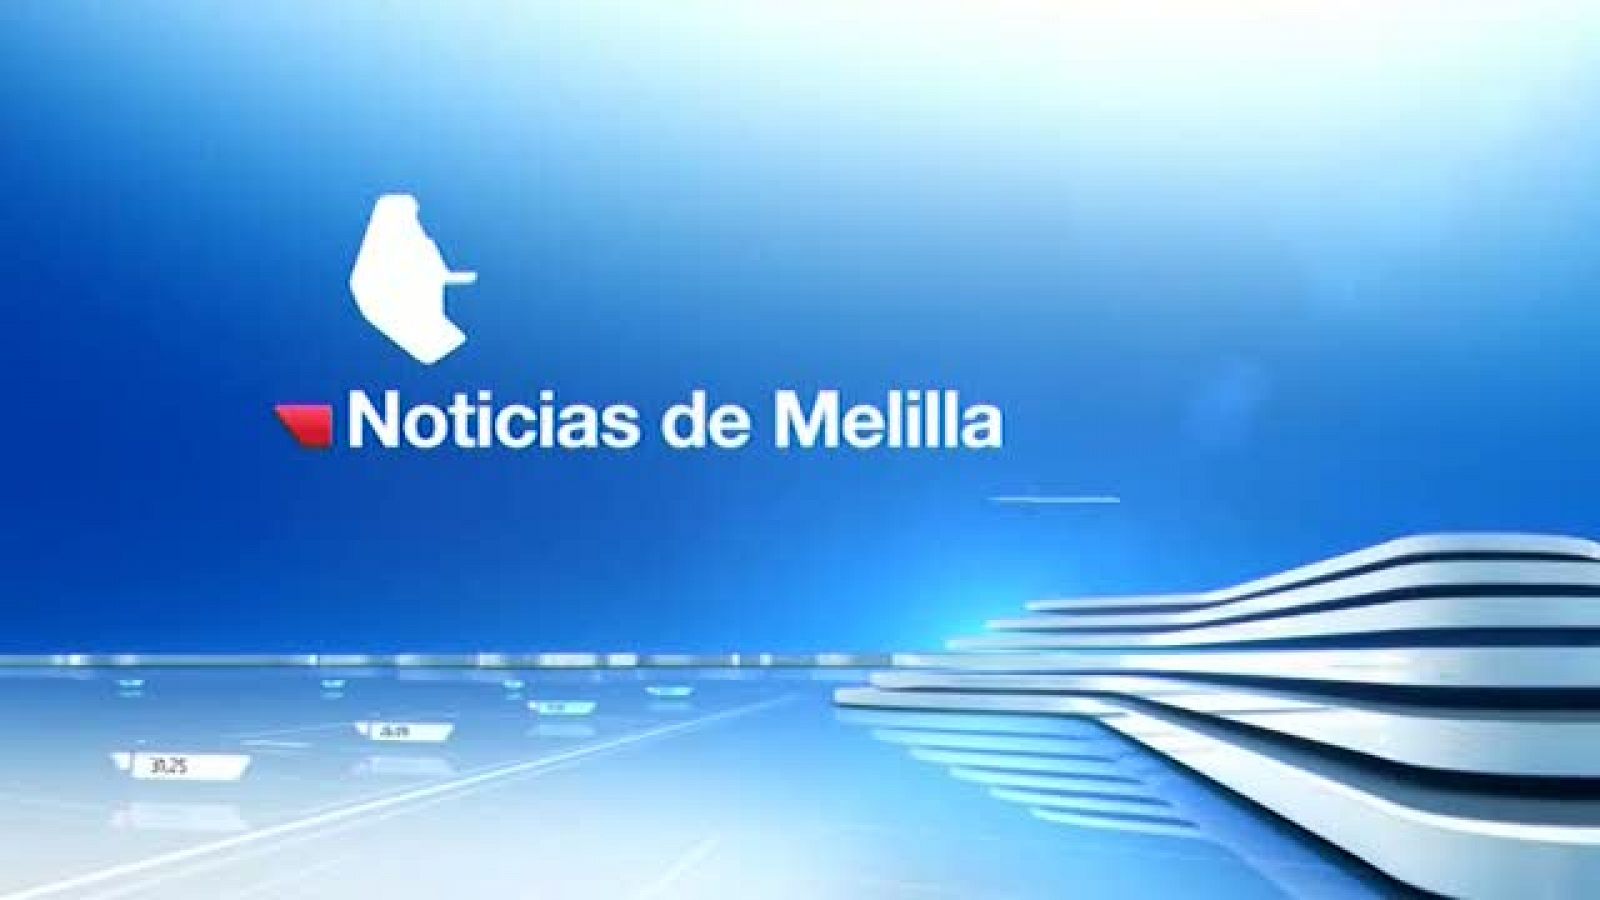 La noticia de Melilla - 11/11/20